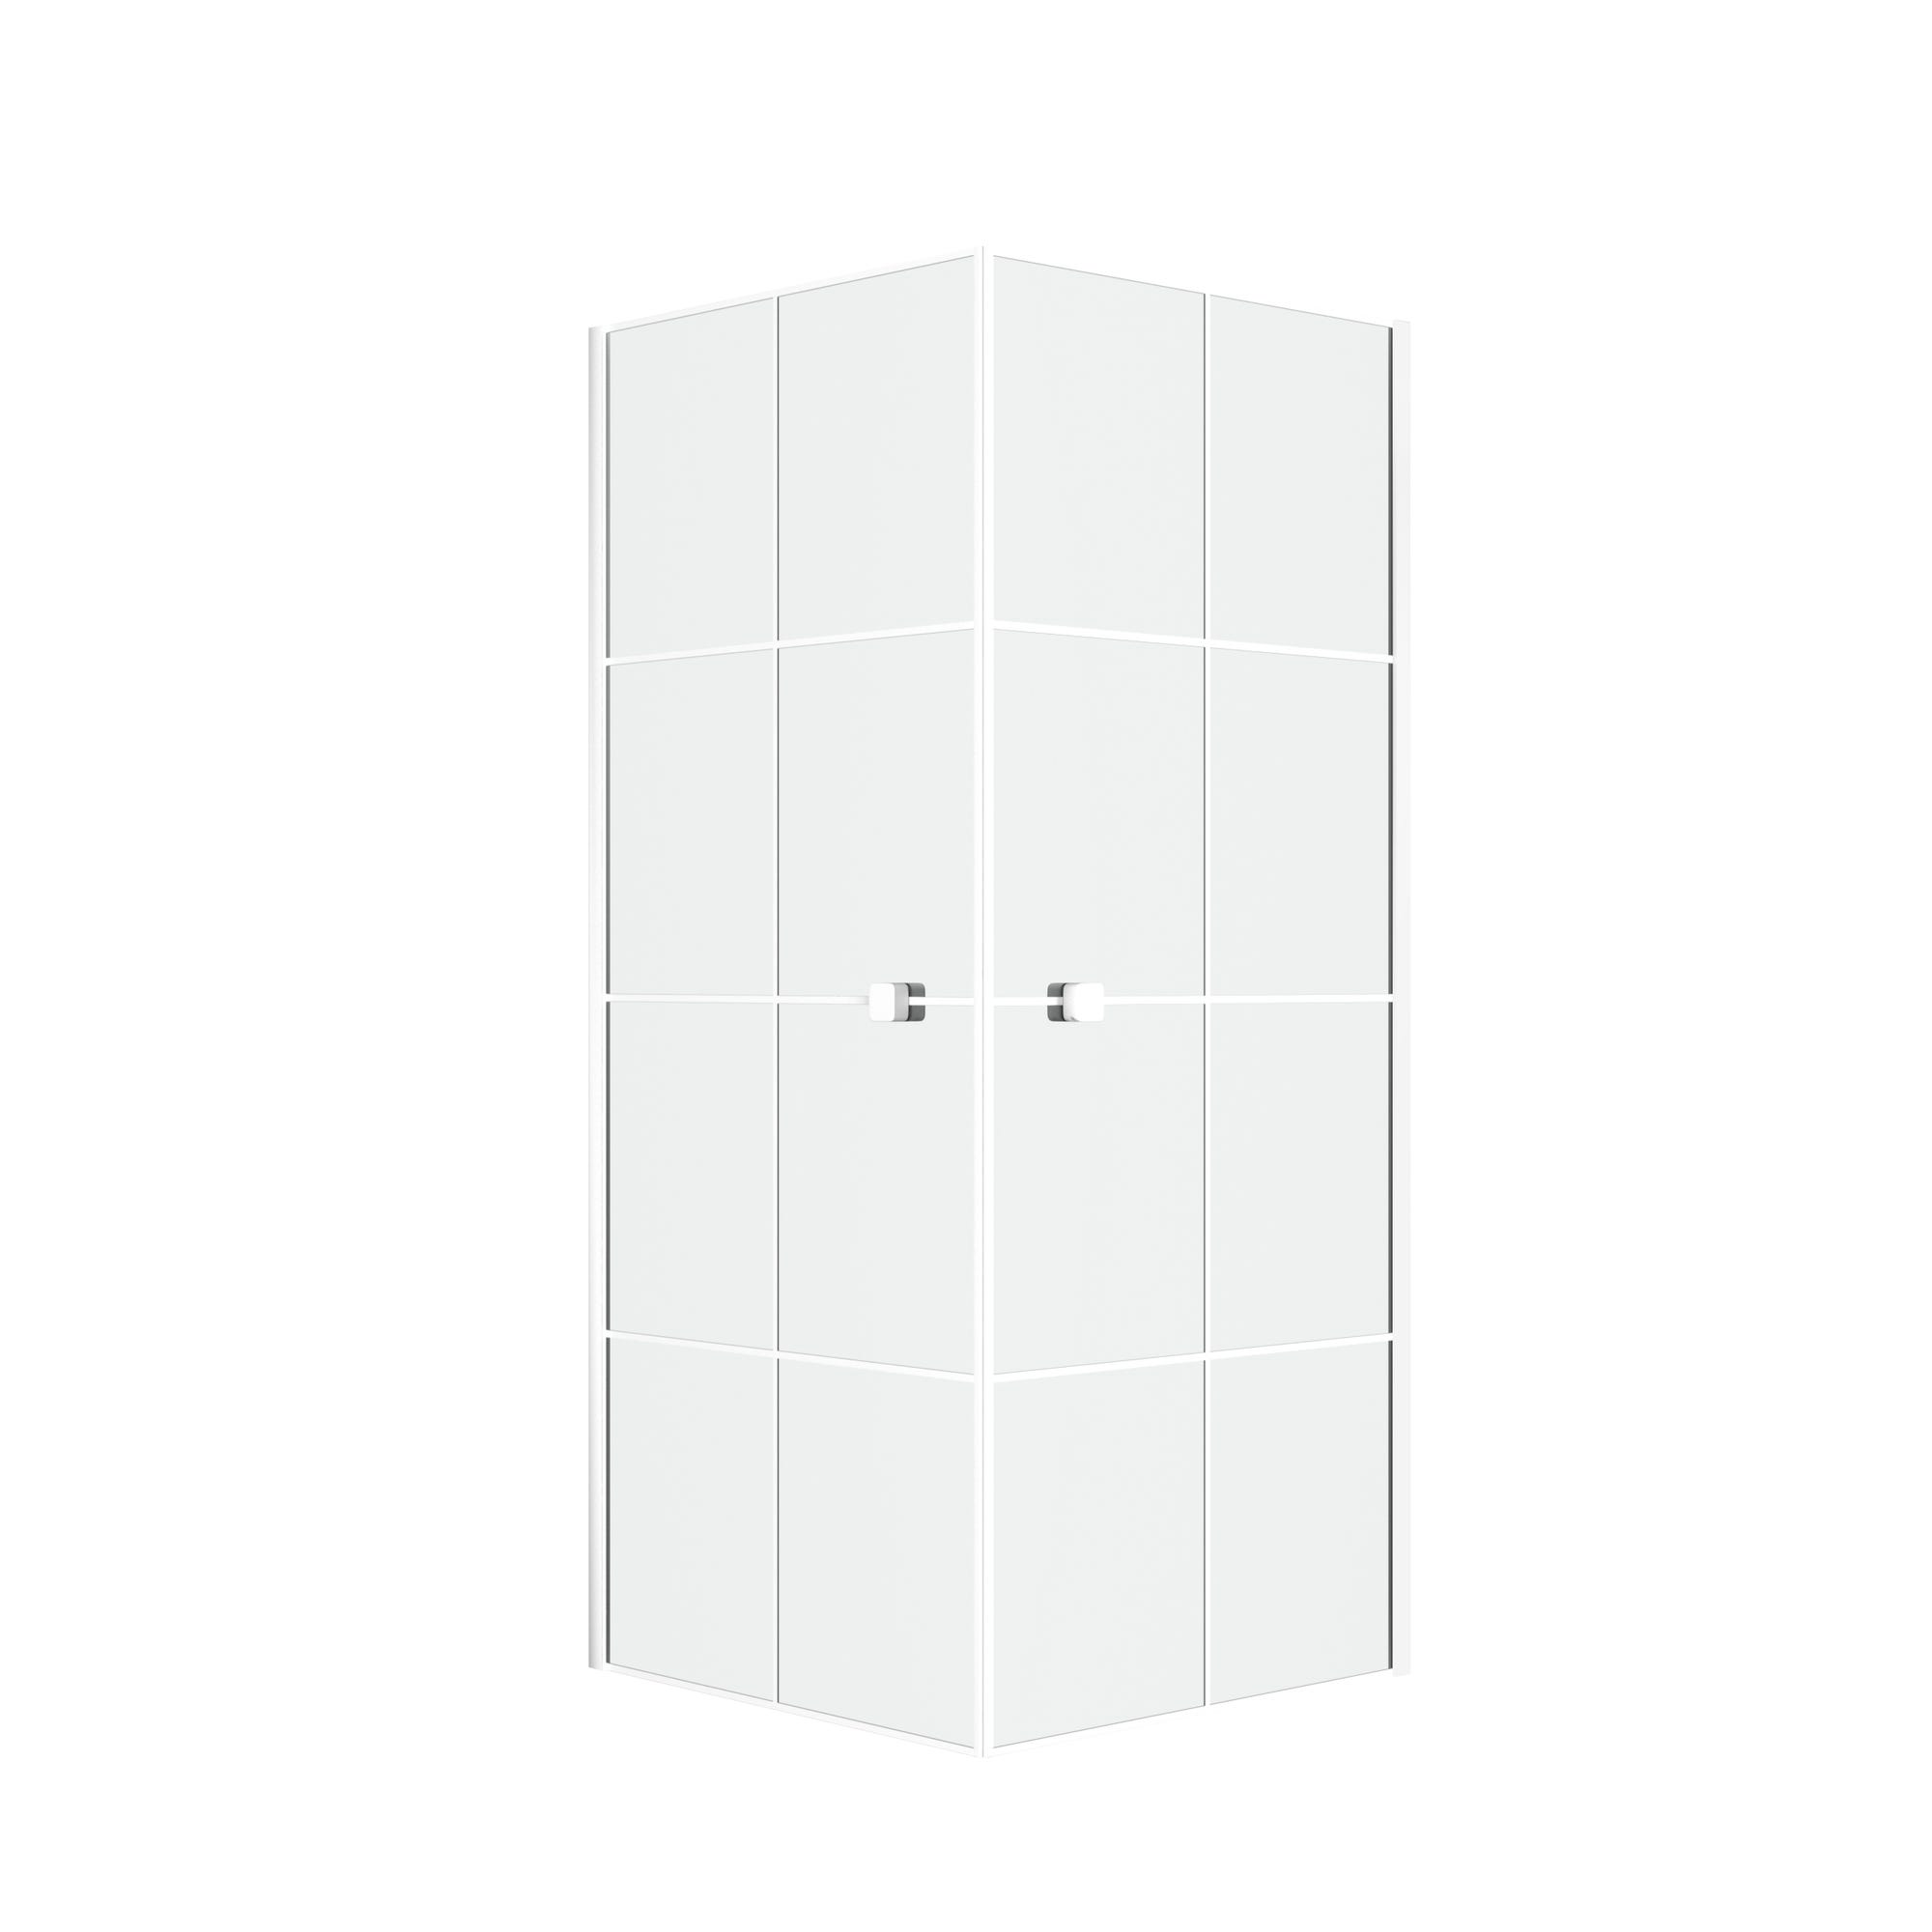 Portes de Douche en Angle 80x80x190 cm - Motifs carrés - Profilés Blanc - WHITE CUBE 2